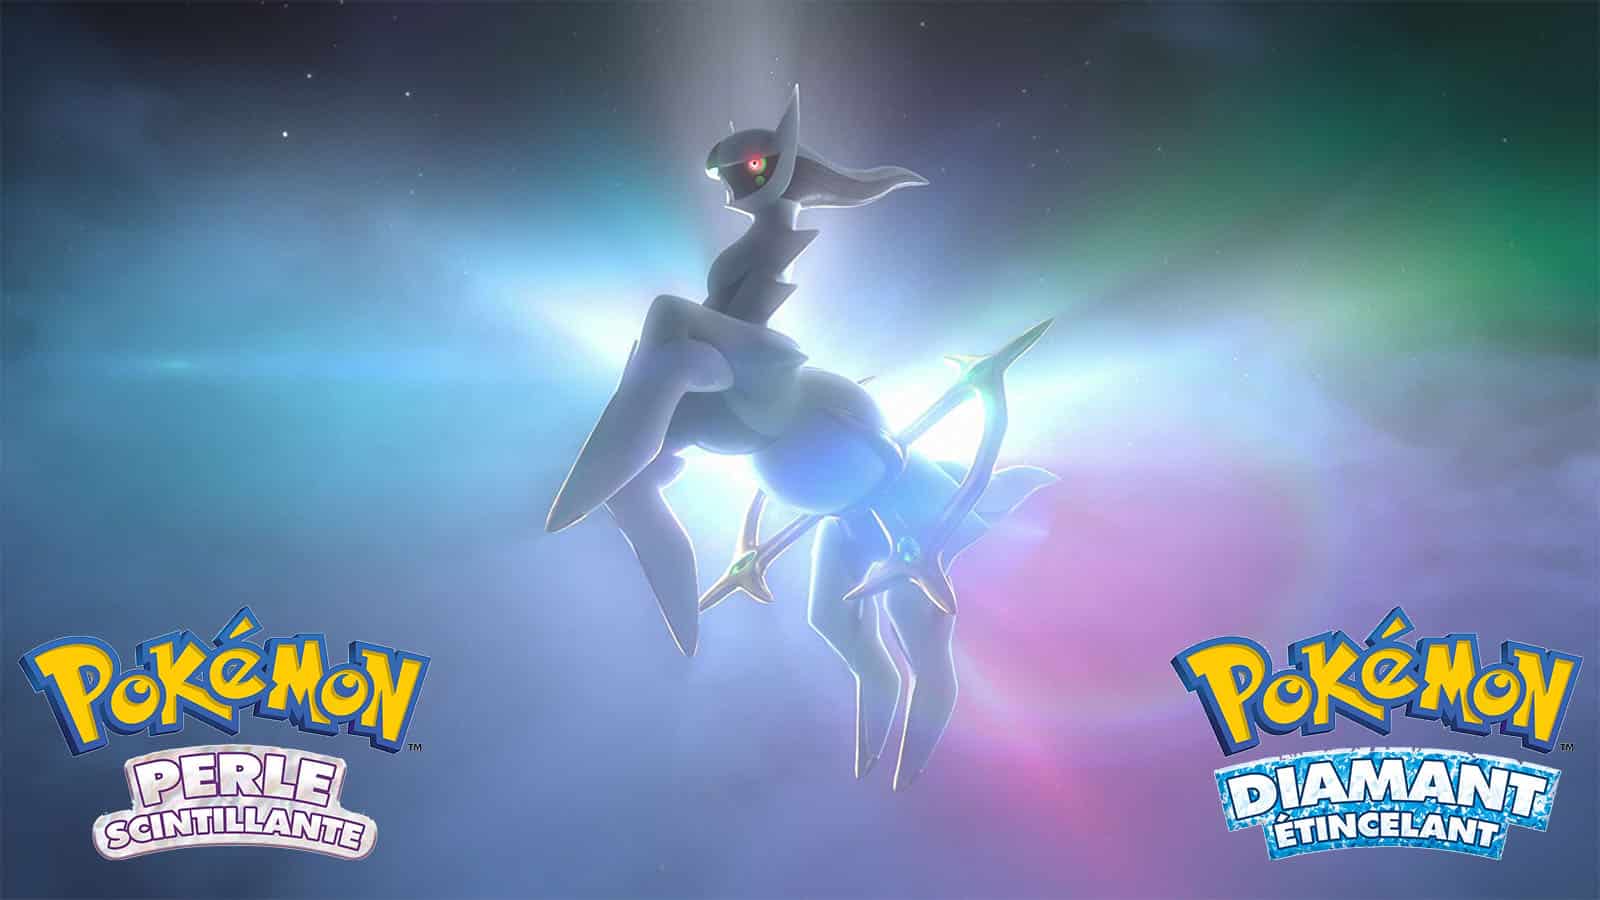 Pokémon Diamant Perle Arceus